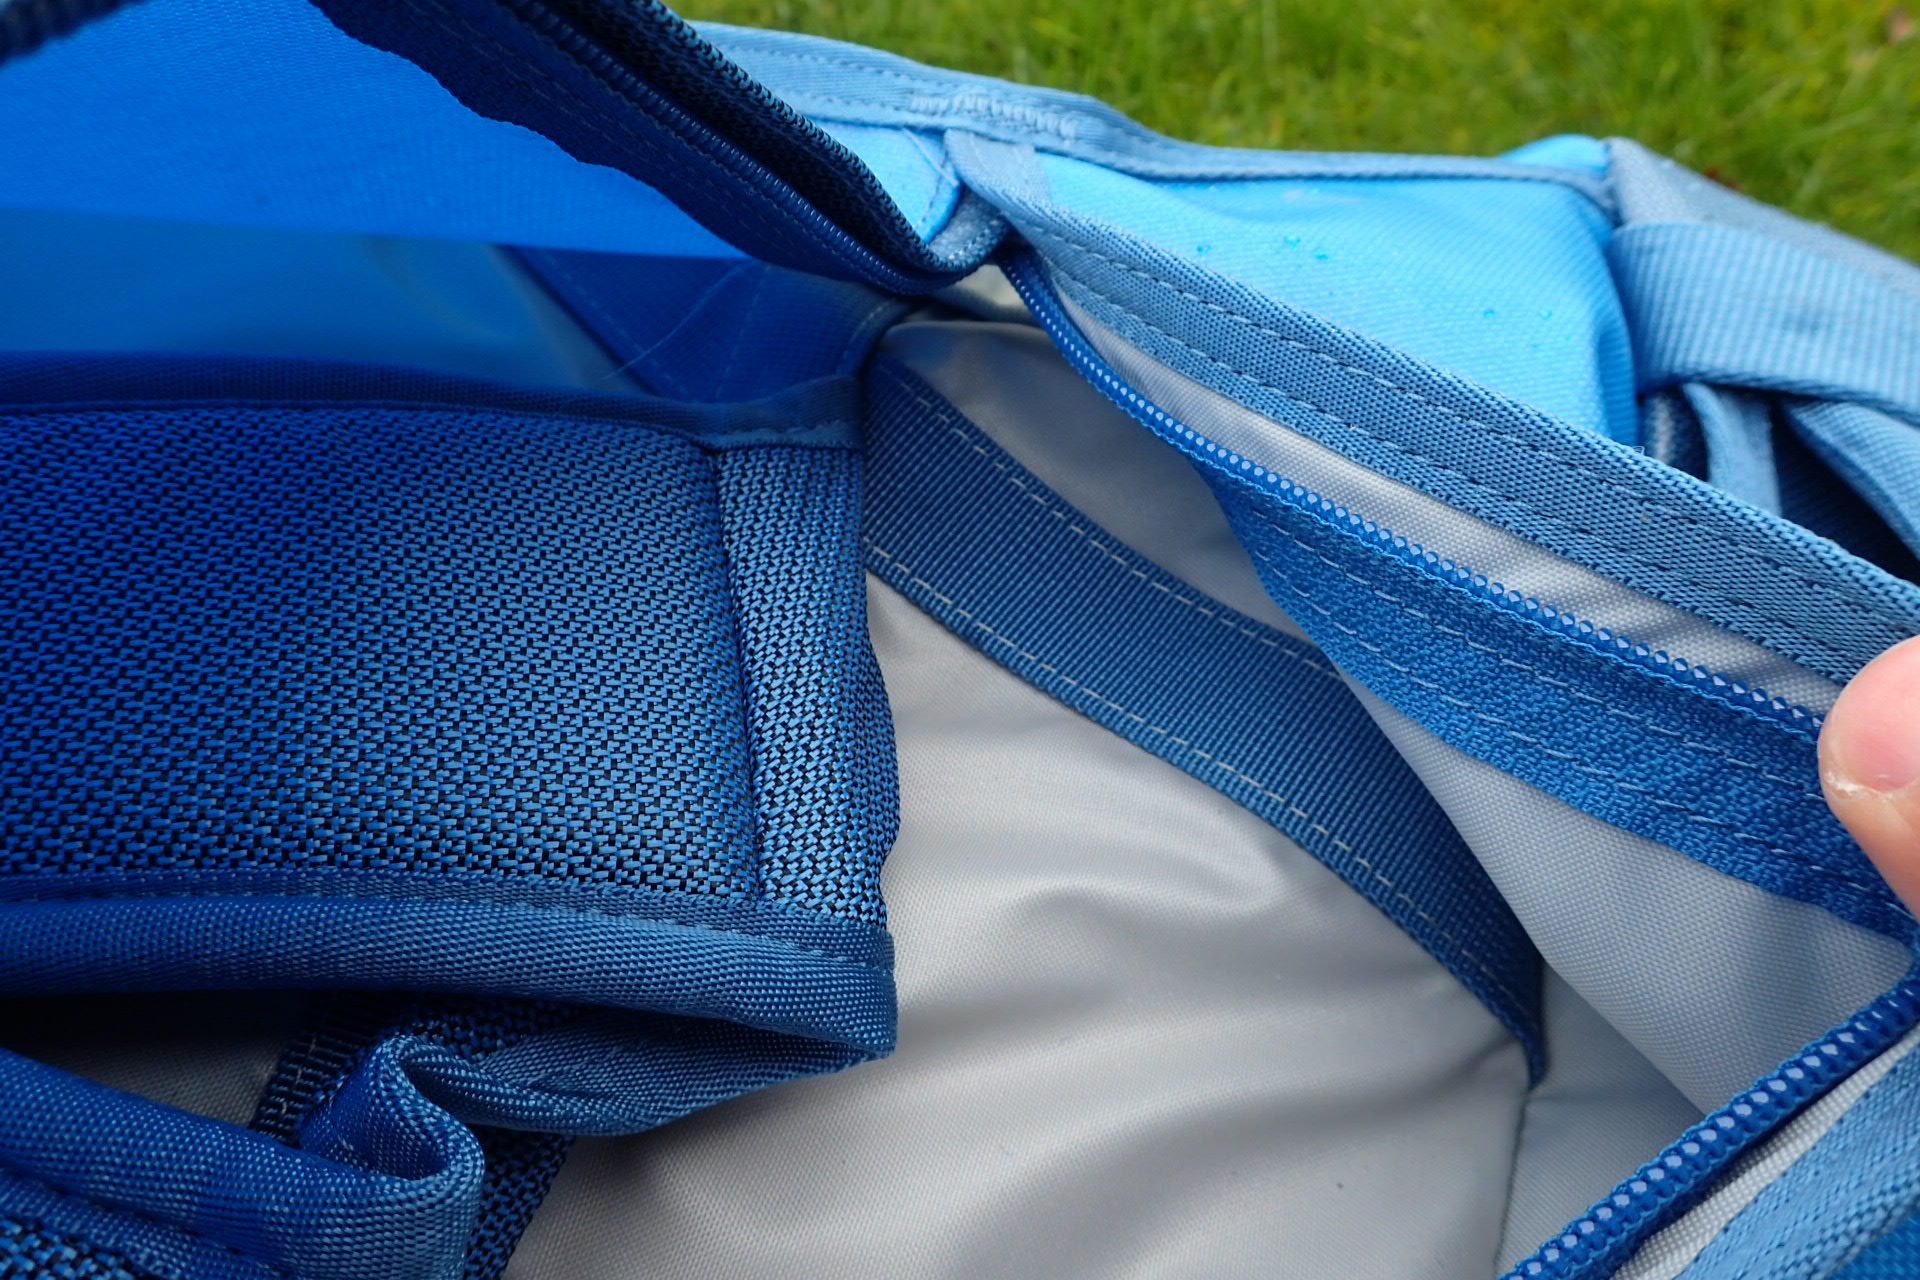 Ramenní popruhy jsou přišity na nosnou část celé tašky tak, aby se nevytrhly.